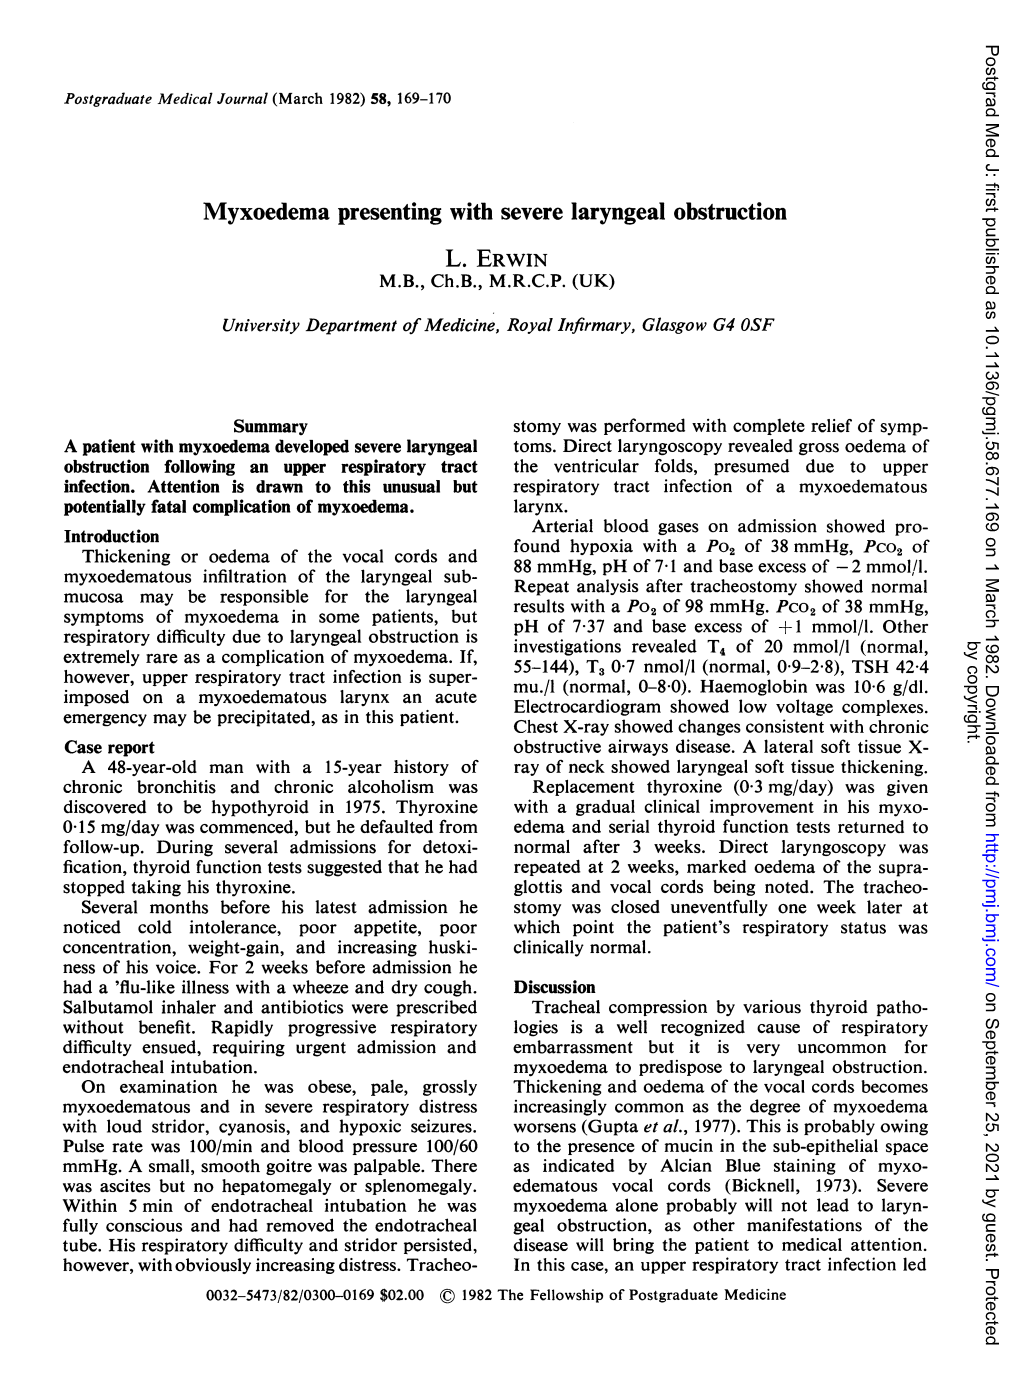 Myxoedema Presenting with Severe Laryngeal Obstruction L. ERWIN M.B., Ch.B., M.R.C.P